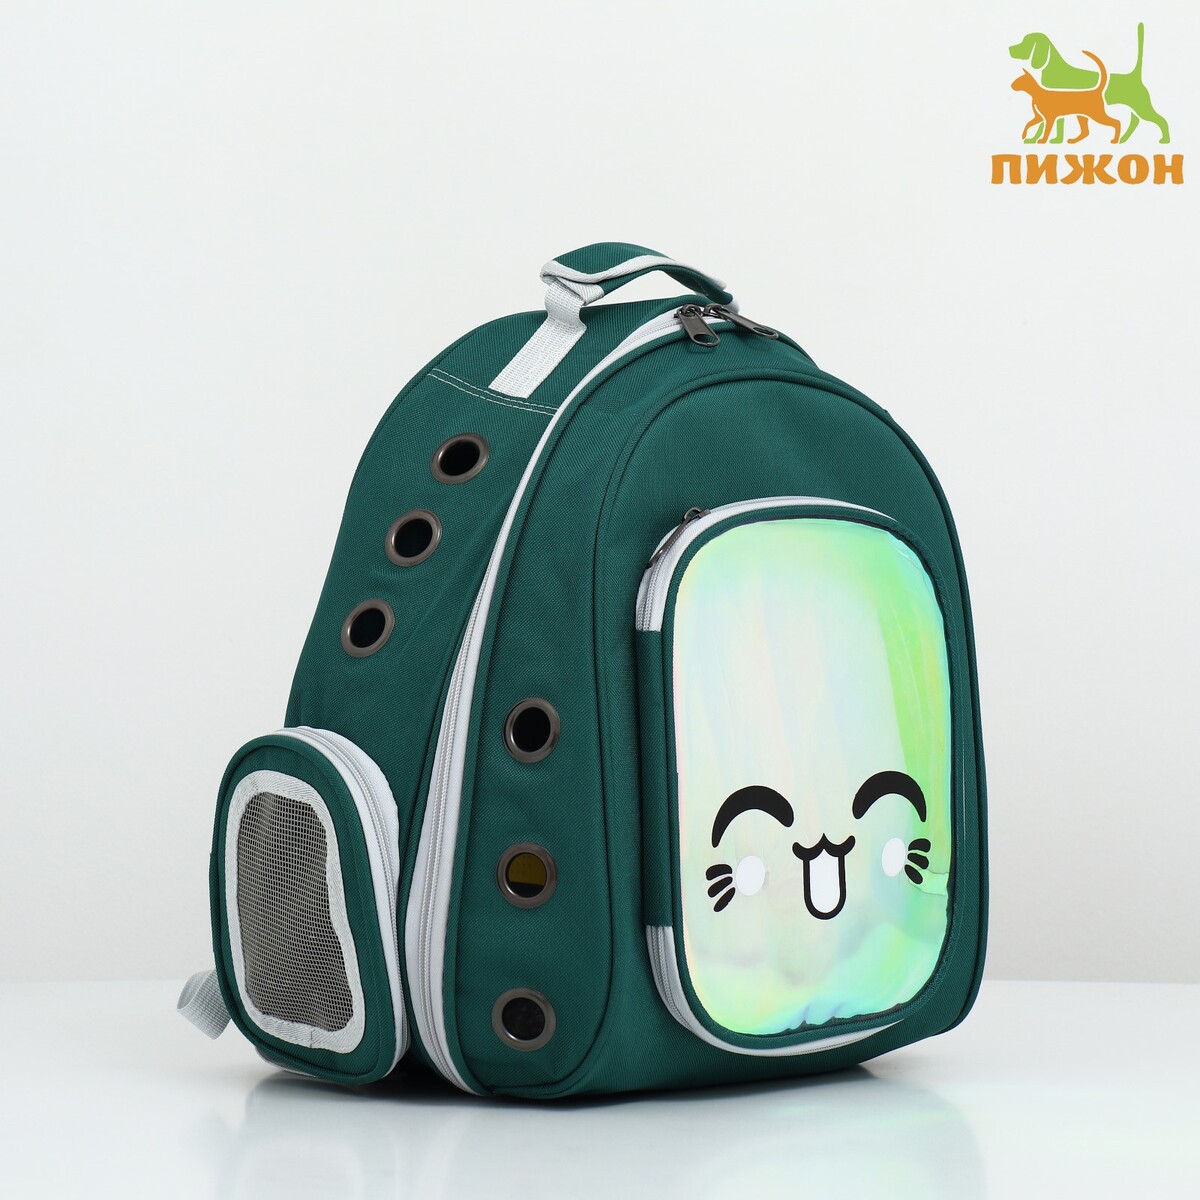 Рюкзак для переноски животных с окном для обзора, зеленый